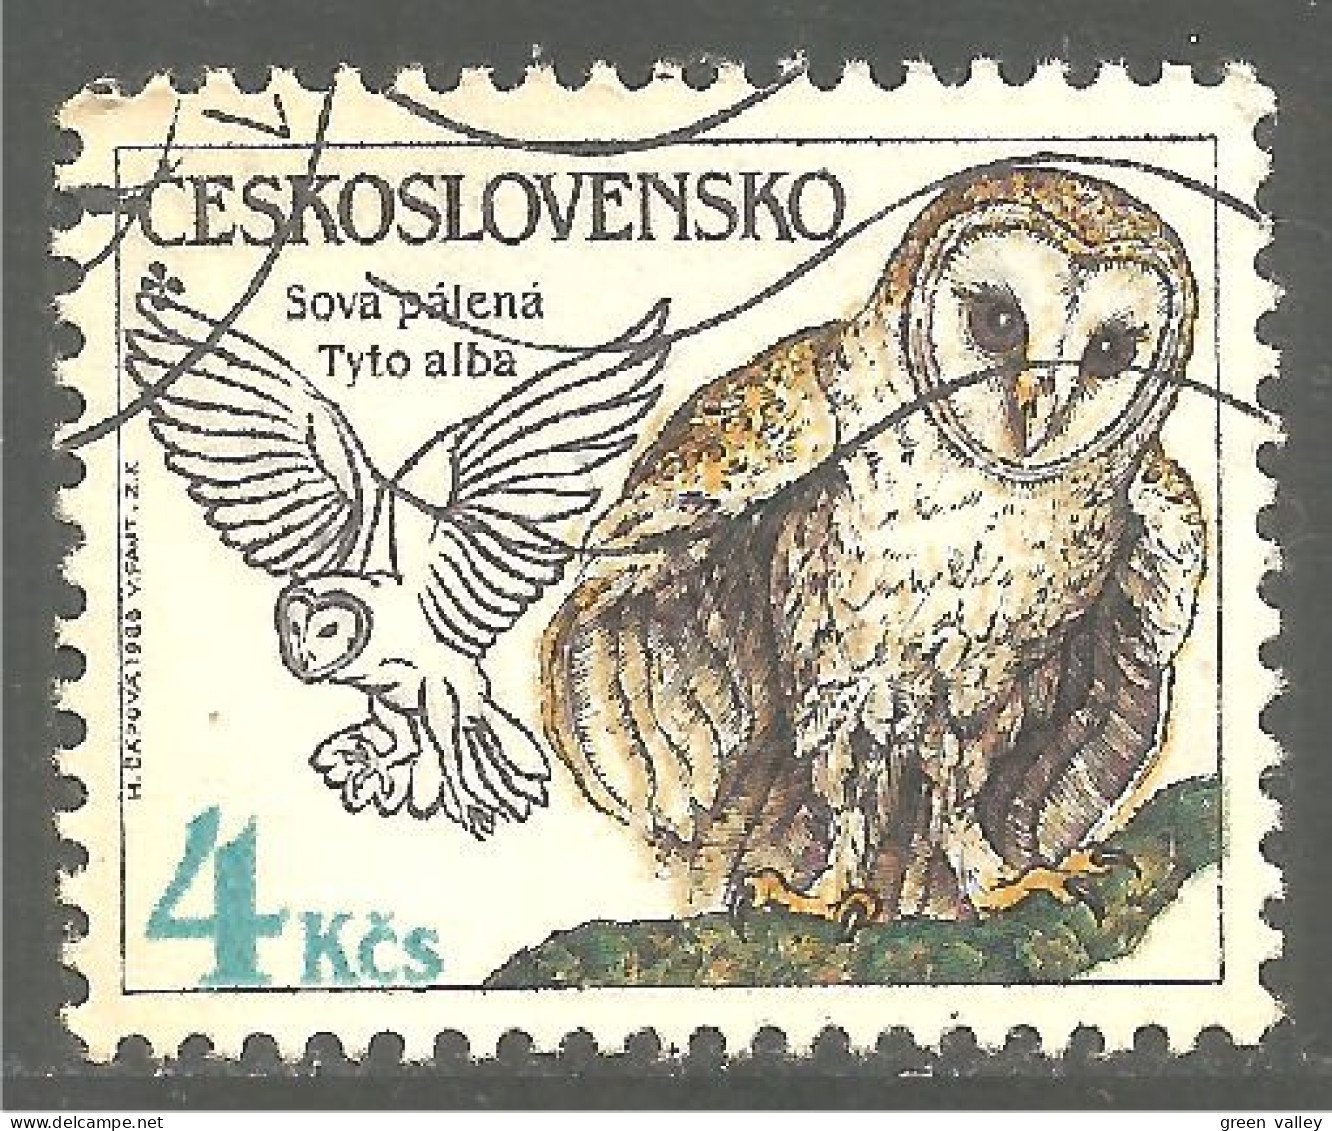 OI-156 Ceskoslovenko Hibou Chouette Owl Eule Gufo Uil Buho - Eulenvögel